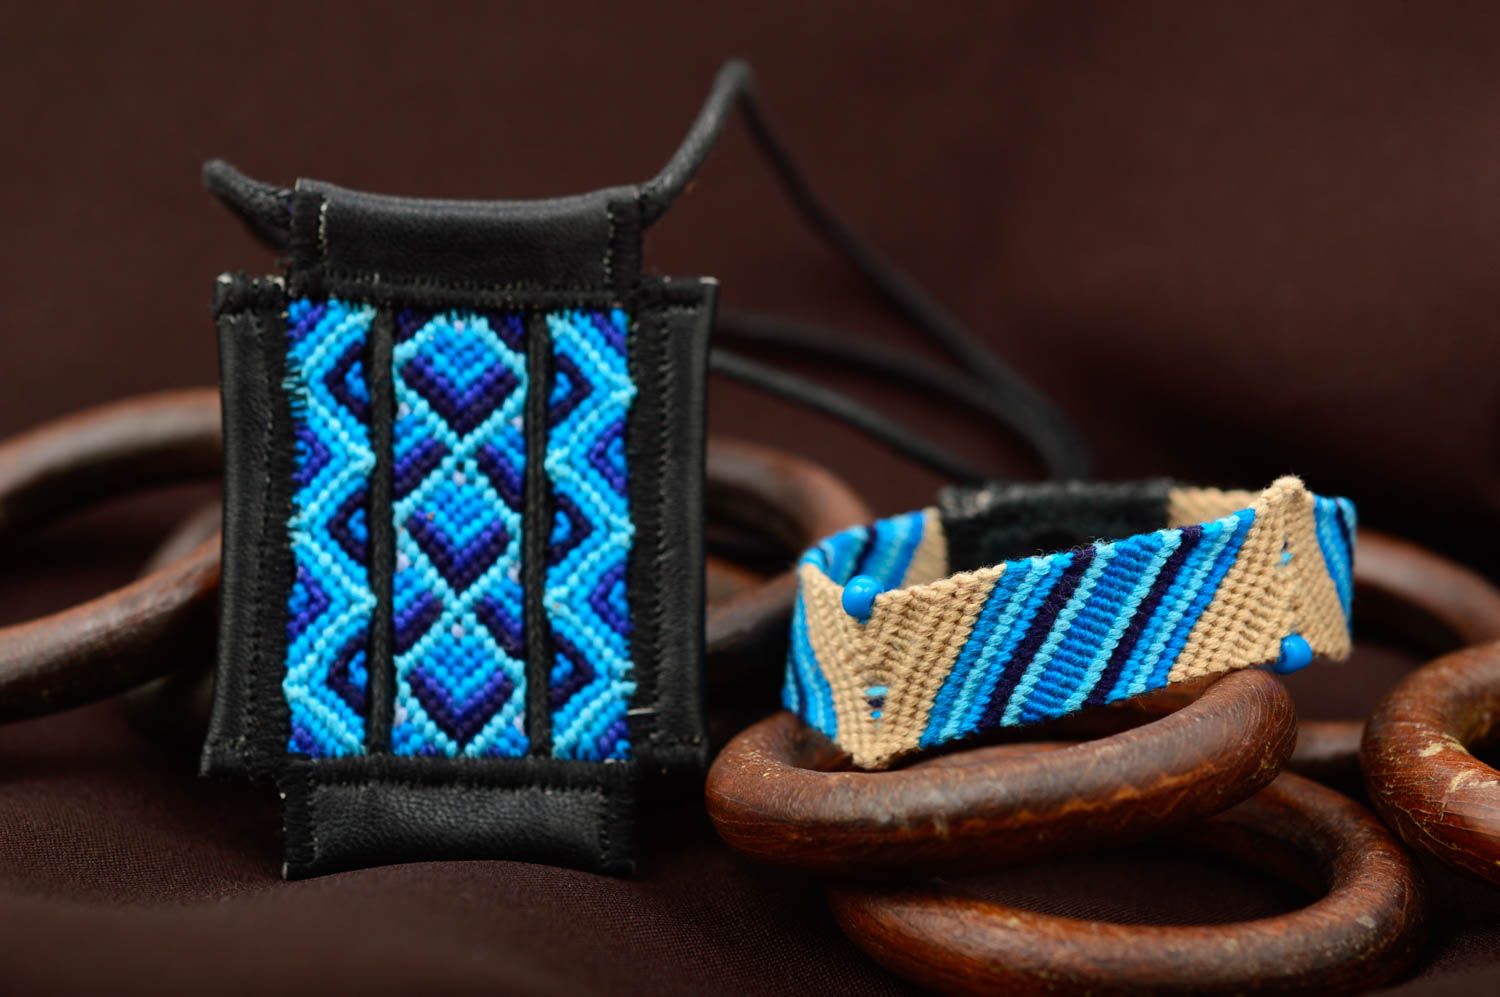 Macrame bijouterie handmade woven pendant friendship bracelet for women photo 1